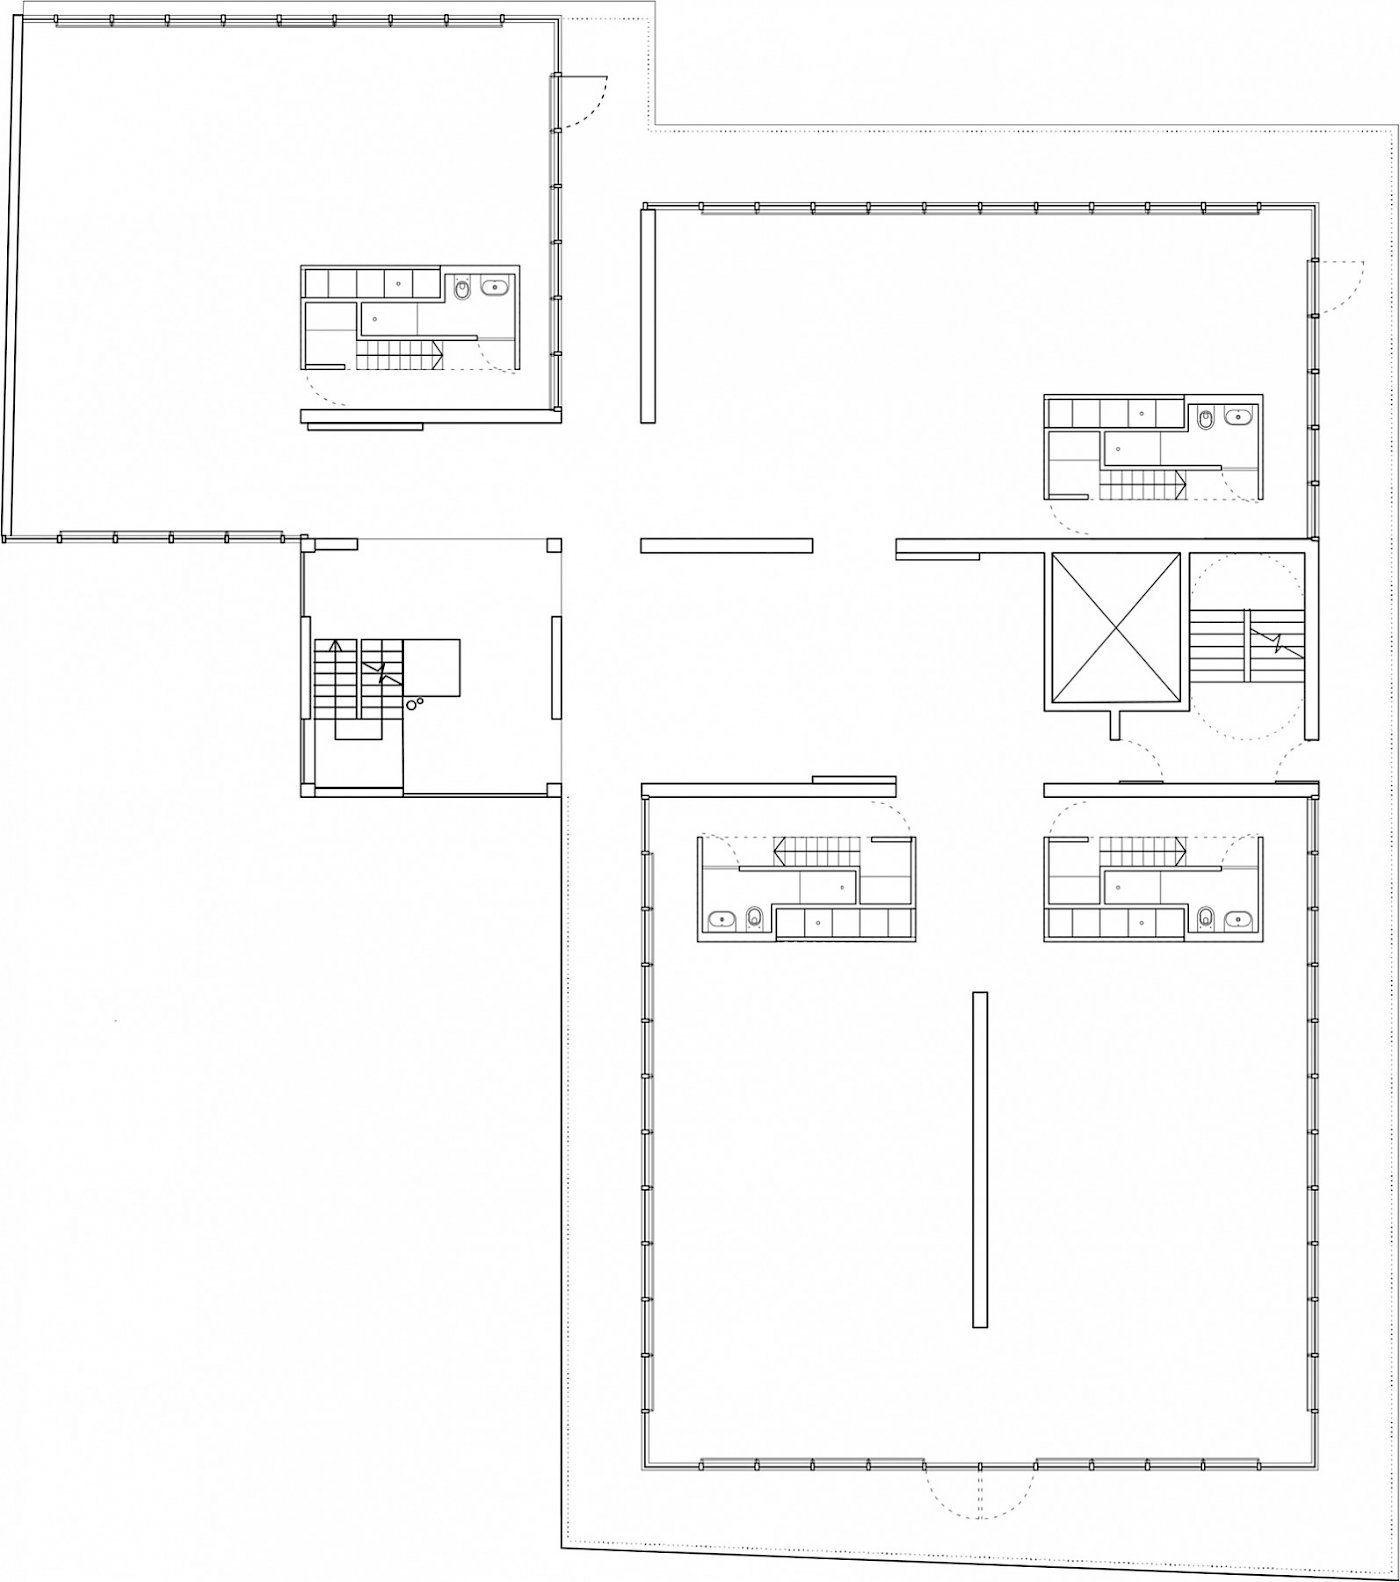 1st Floor Plan in Gallery Mode